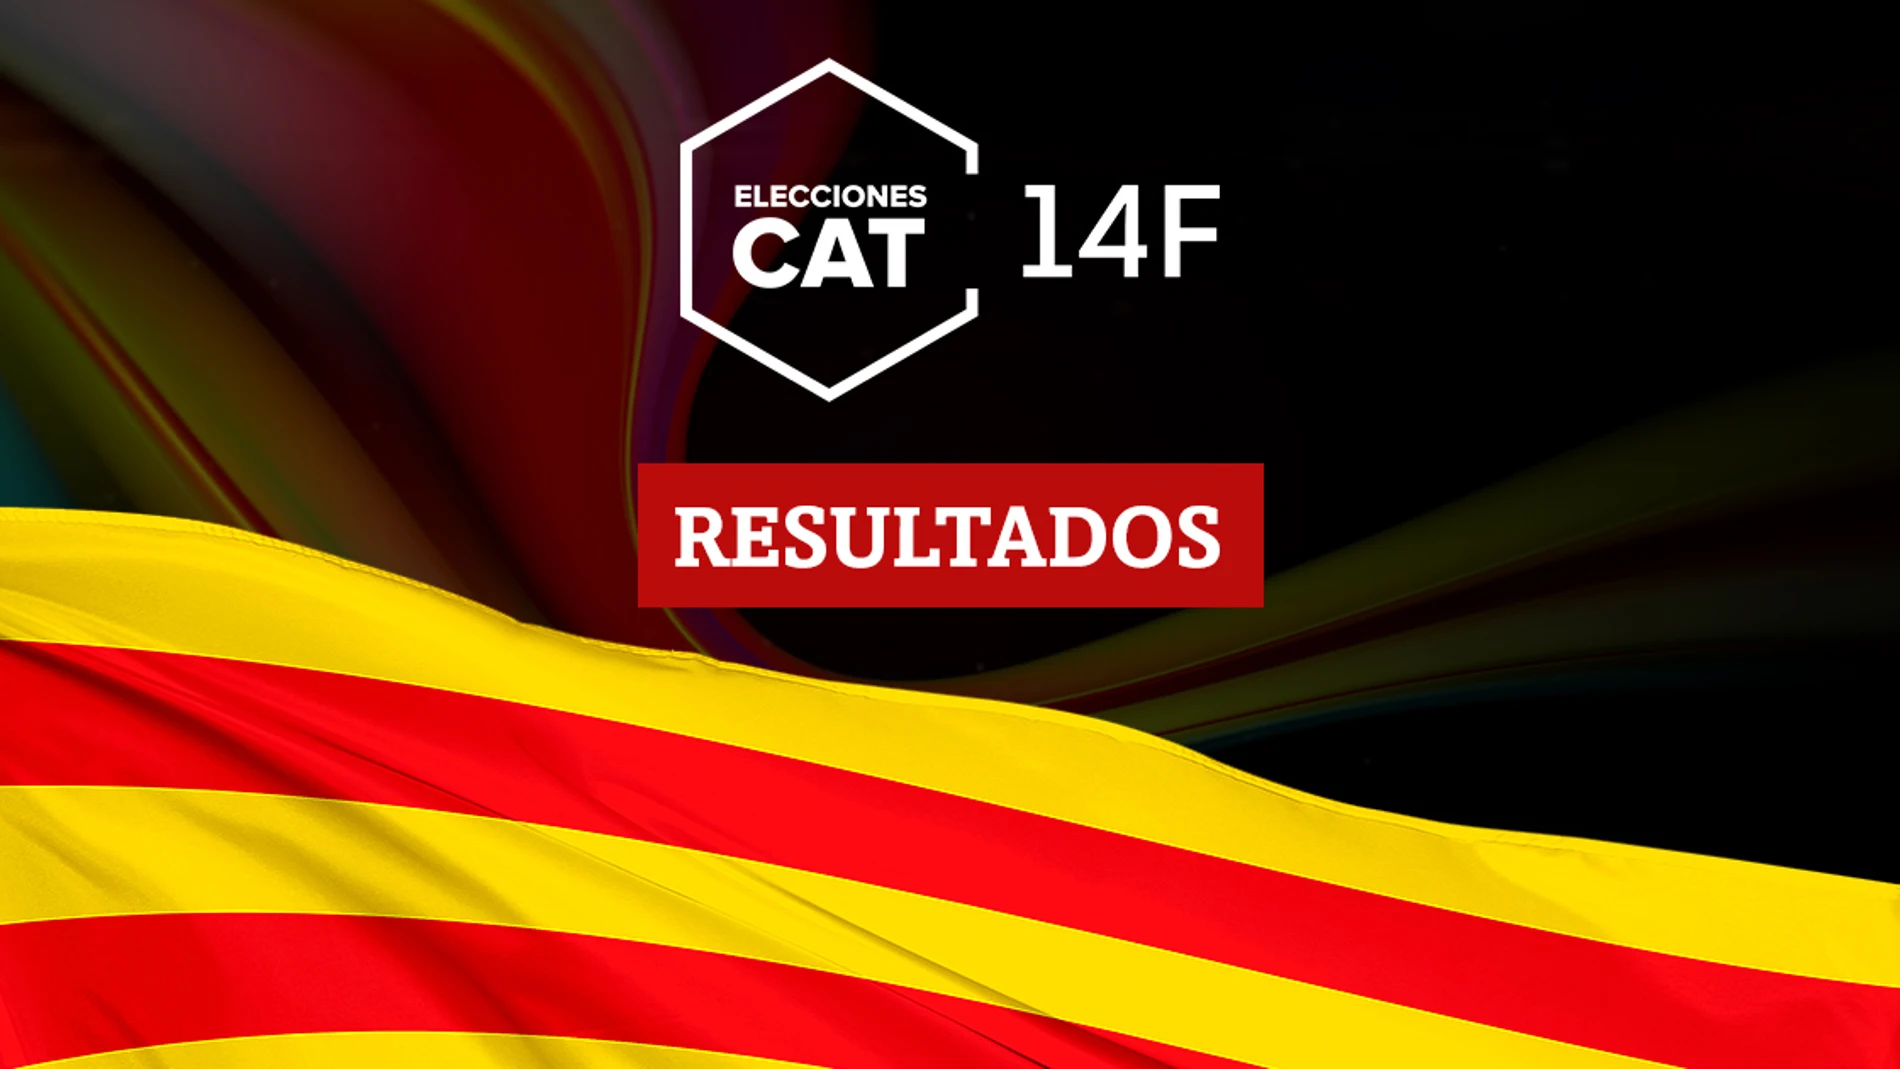 Resultados en {place} de las elecciones catalanas del 14F